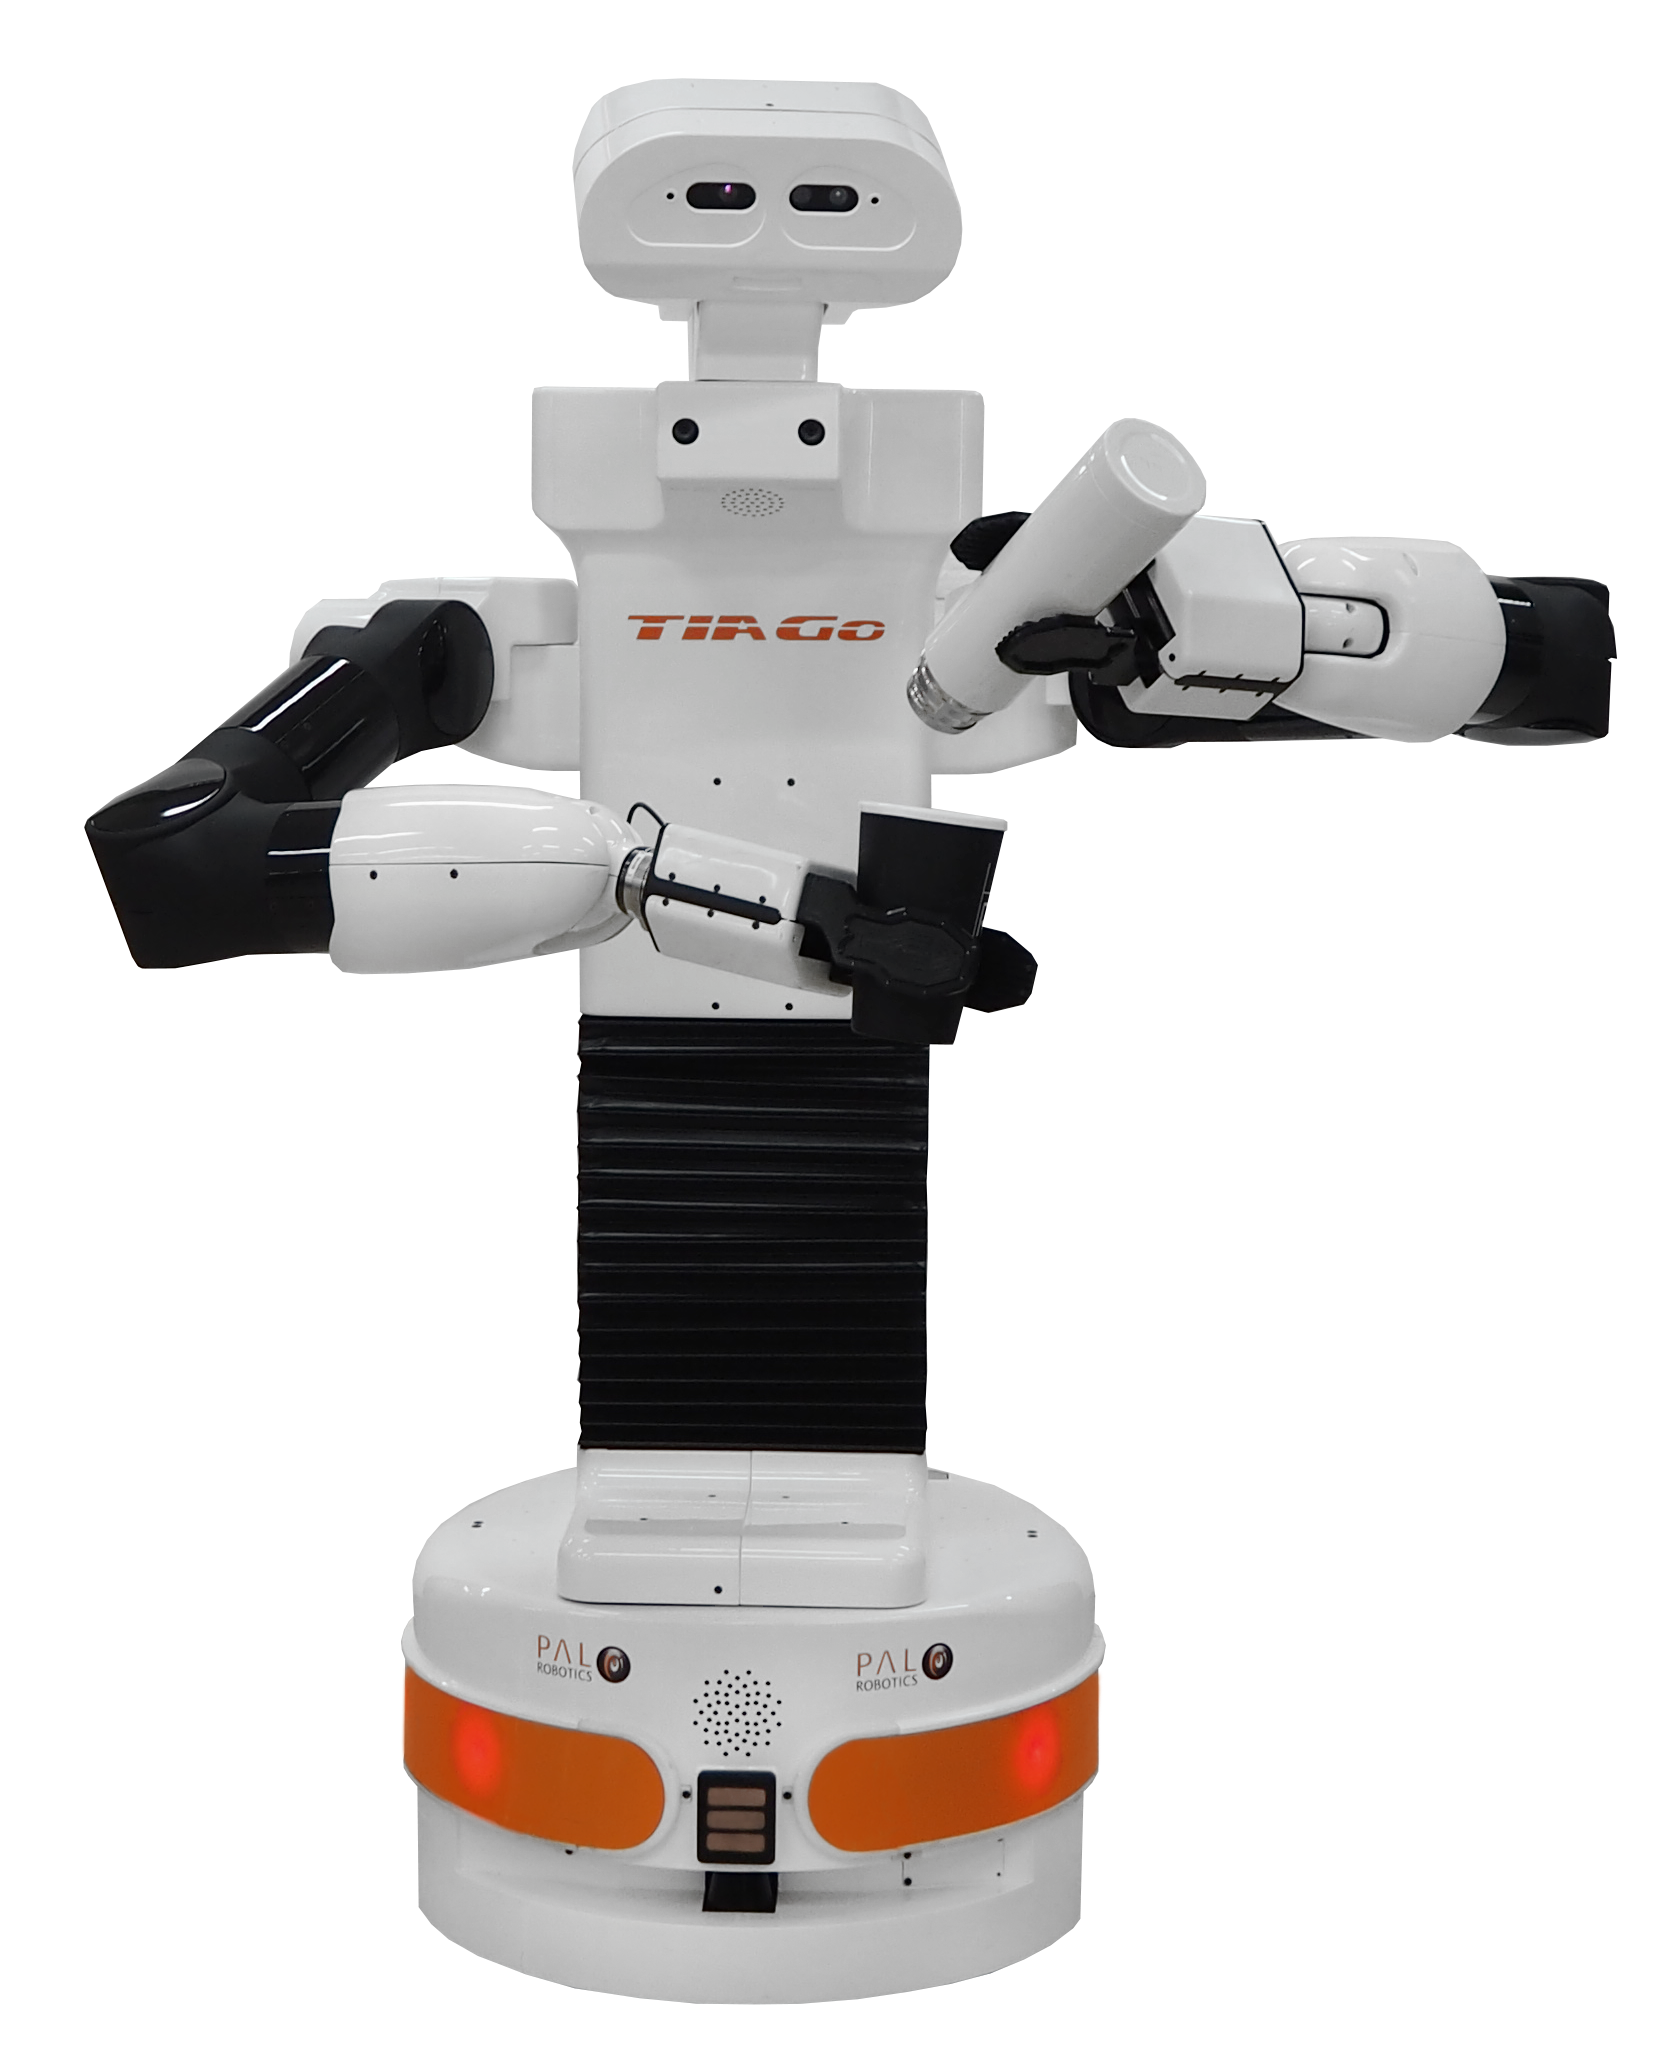 TIAGo++, el nuevo robot para tareas de bi-manipulación!